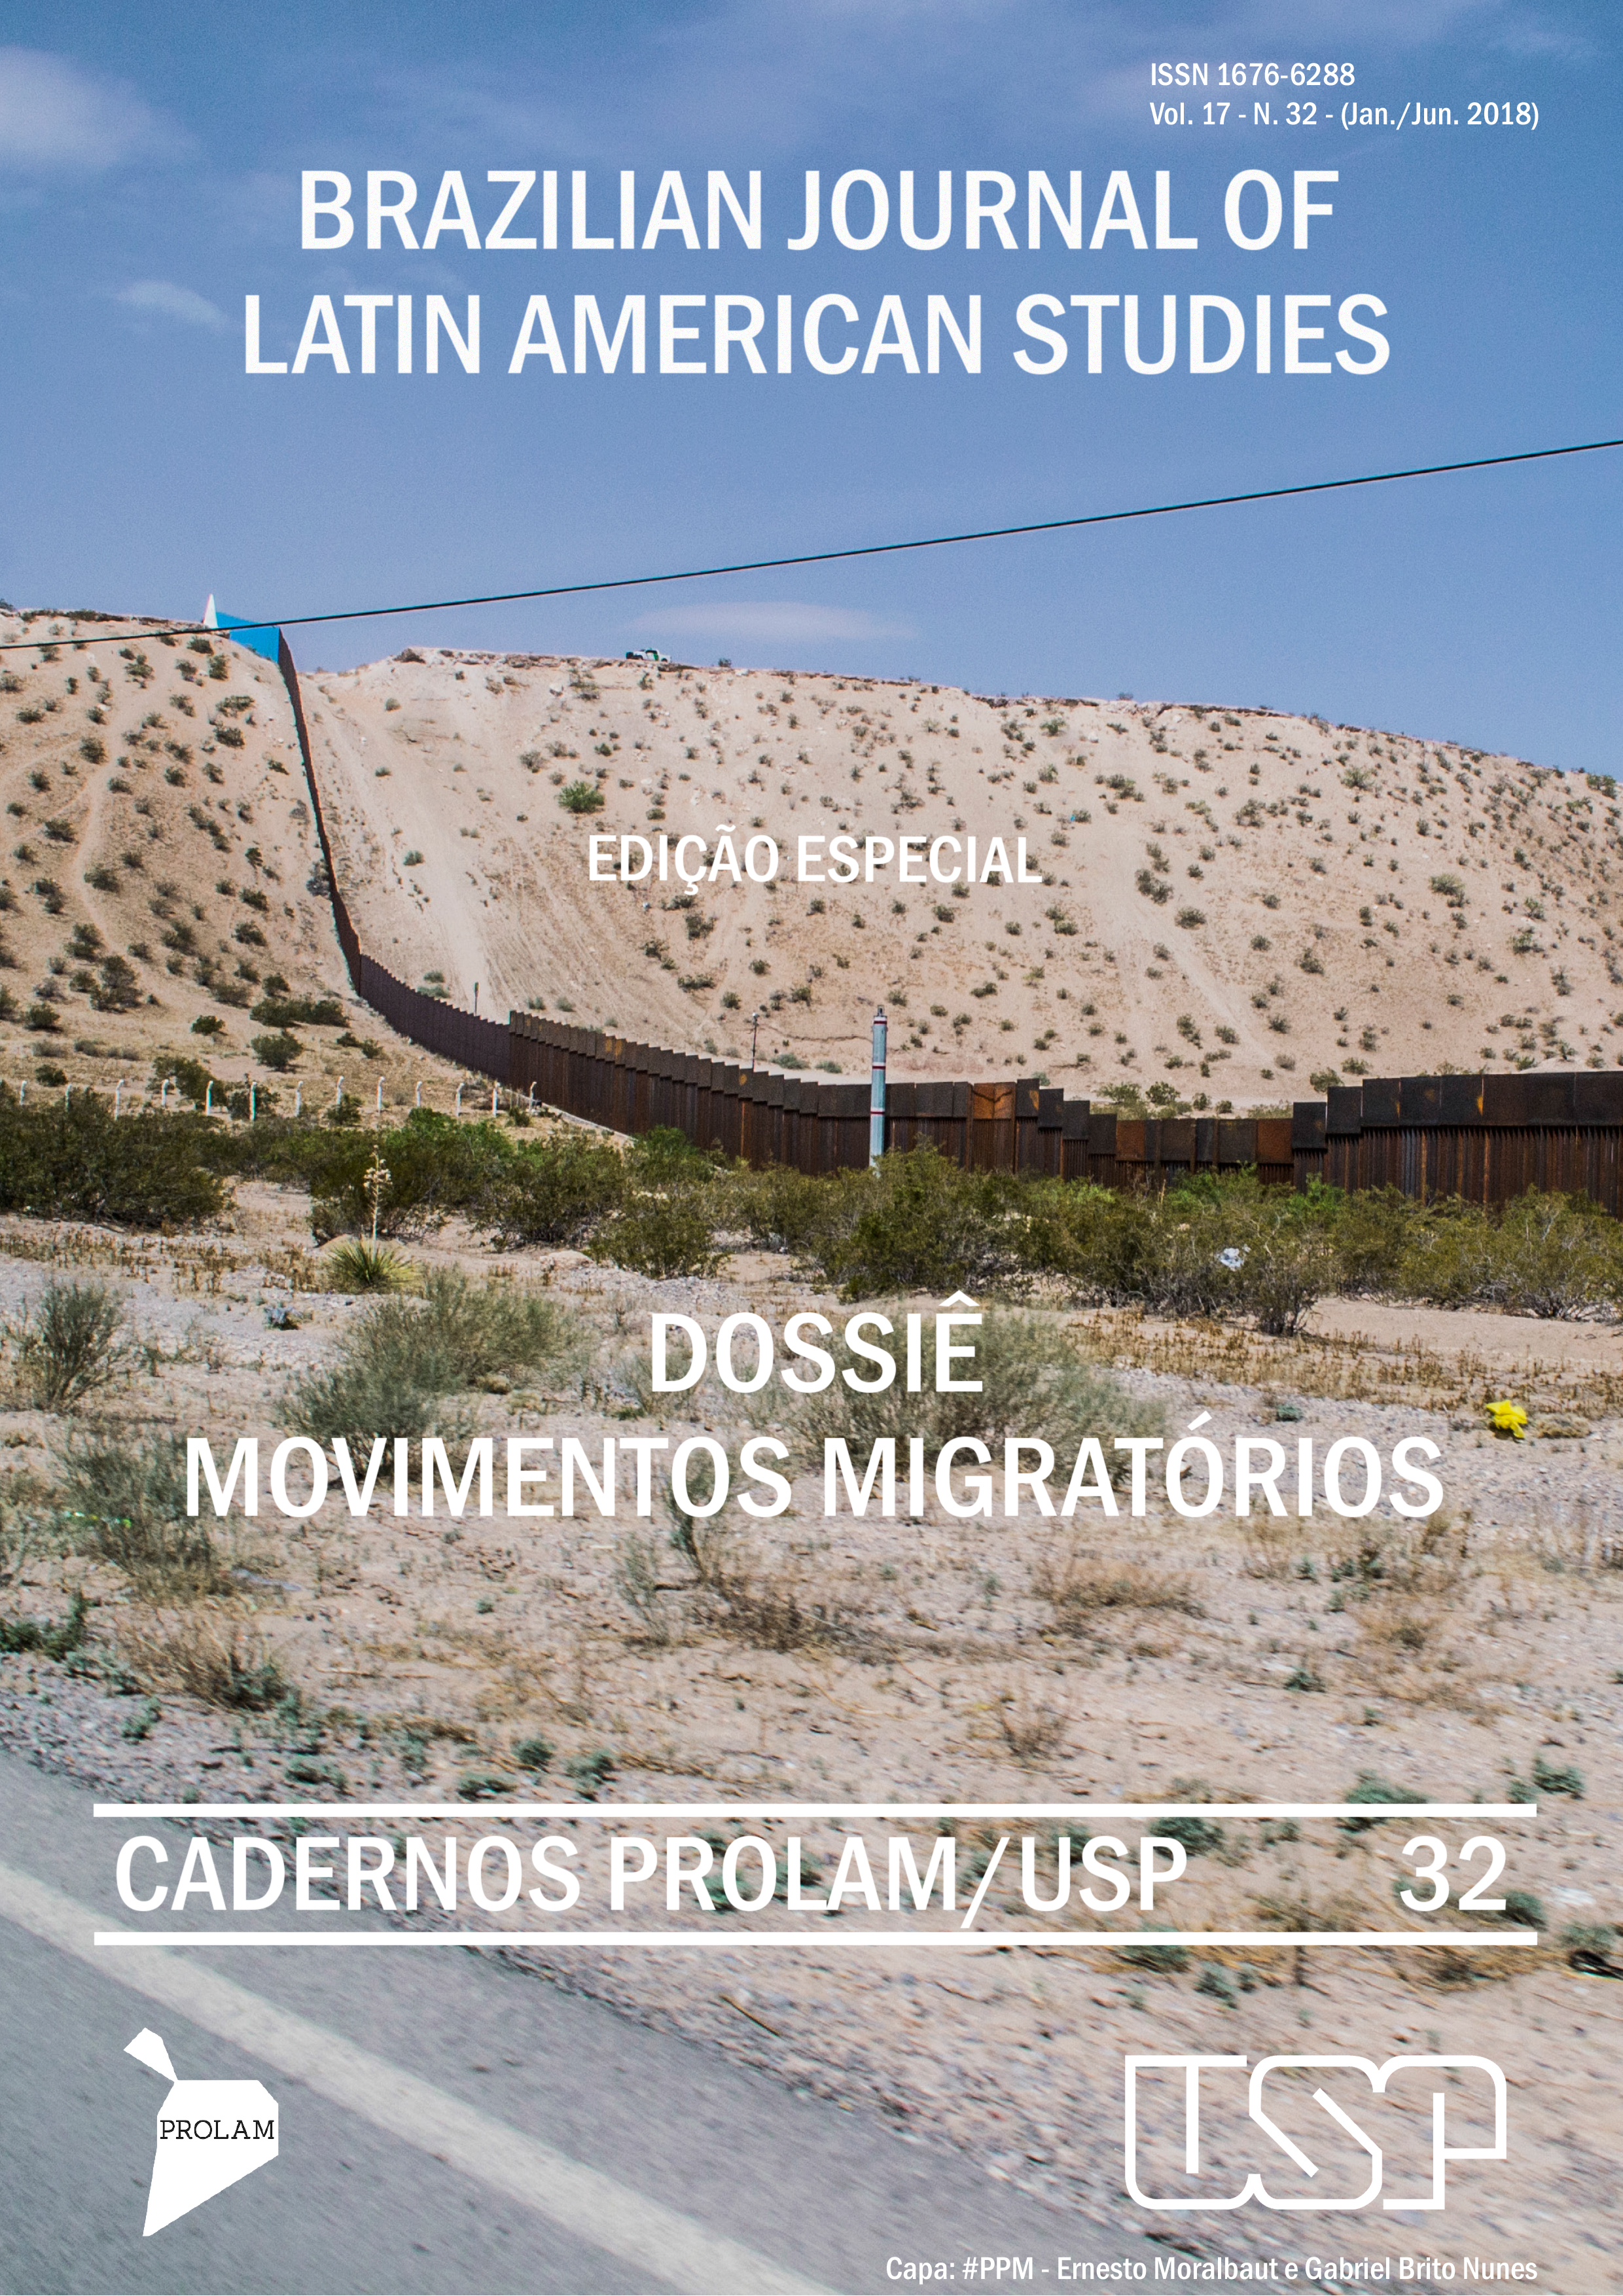 Brazilian Journal of Latin American Studies. Edição Especial. Dossiê Movimentos Migratórios. Cadernos Prolam/USP. 32.